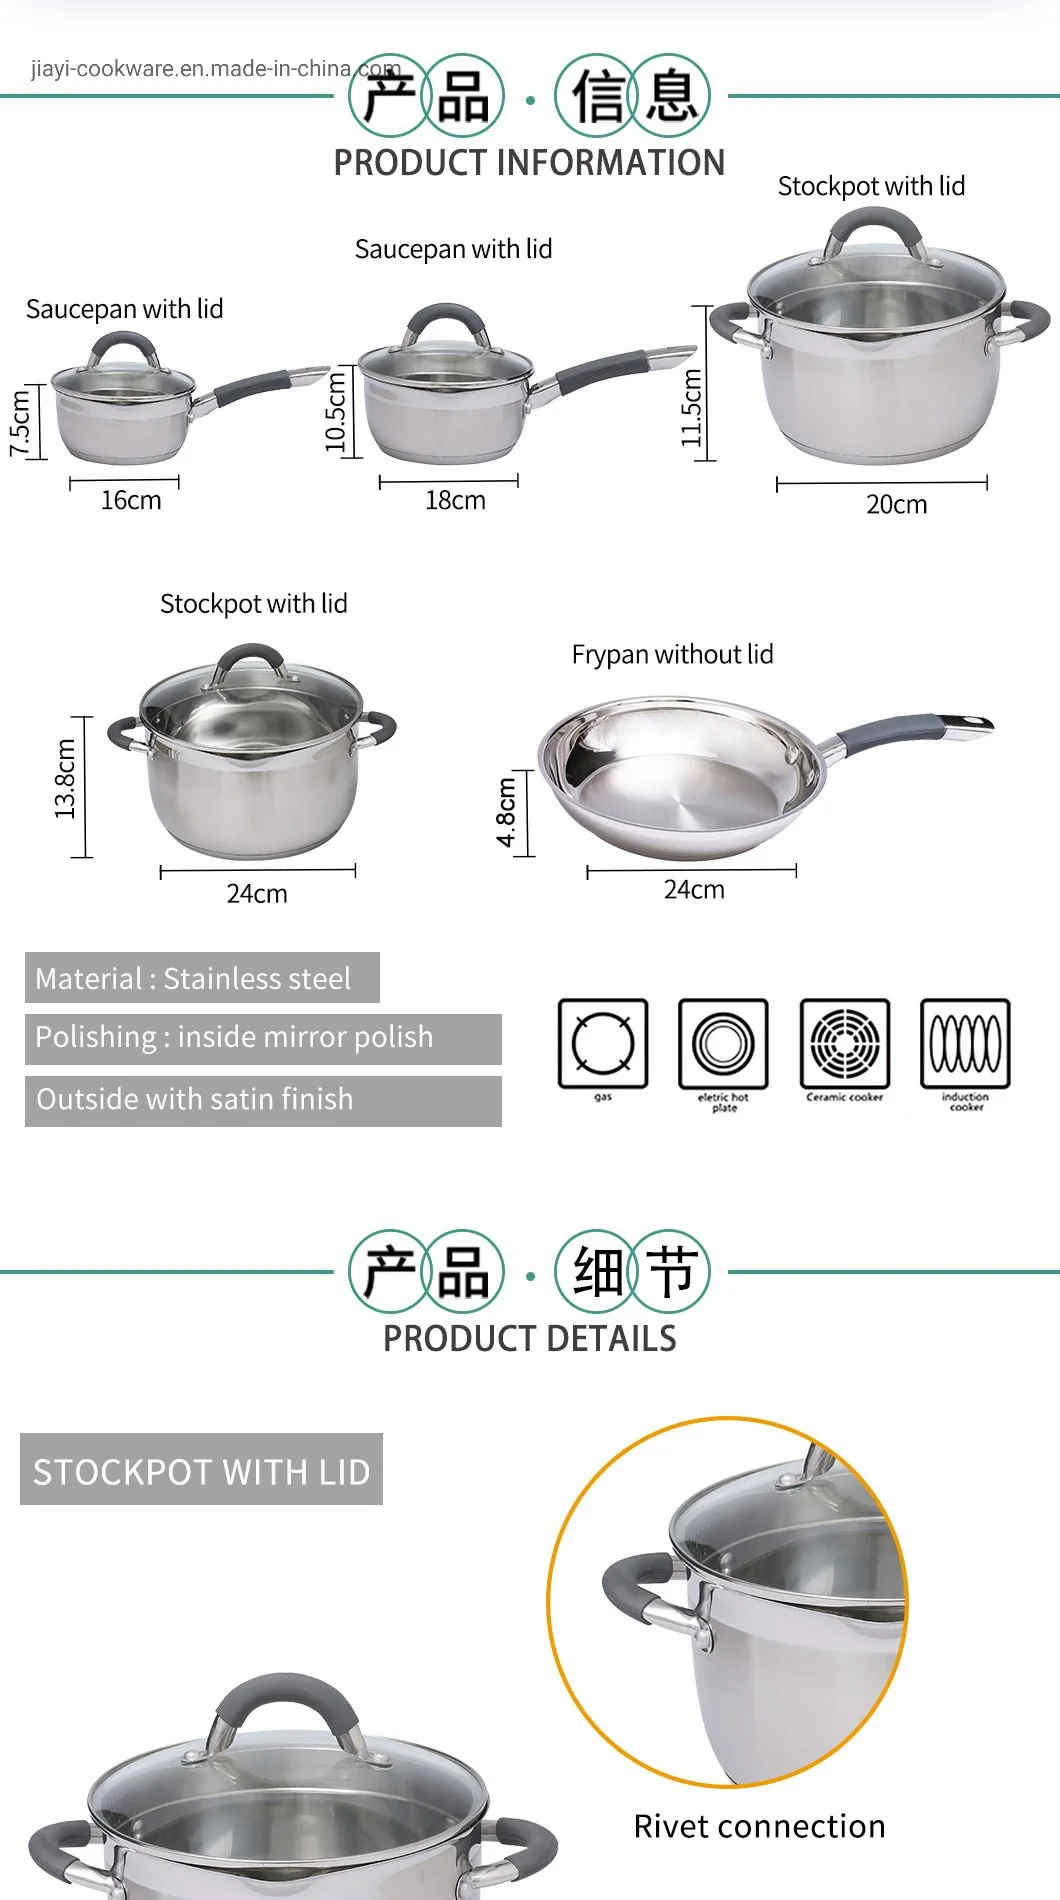 Fabricación de utensilios de cocina de inducción de acero inoxidable multifuncionales, sistema de olla común, olla de cocción